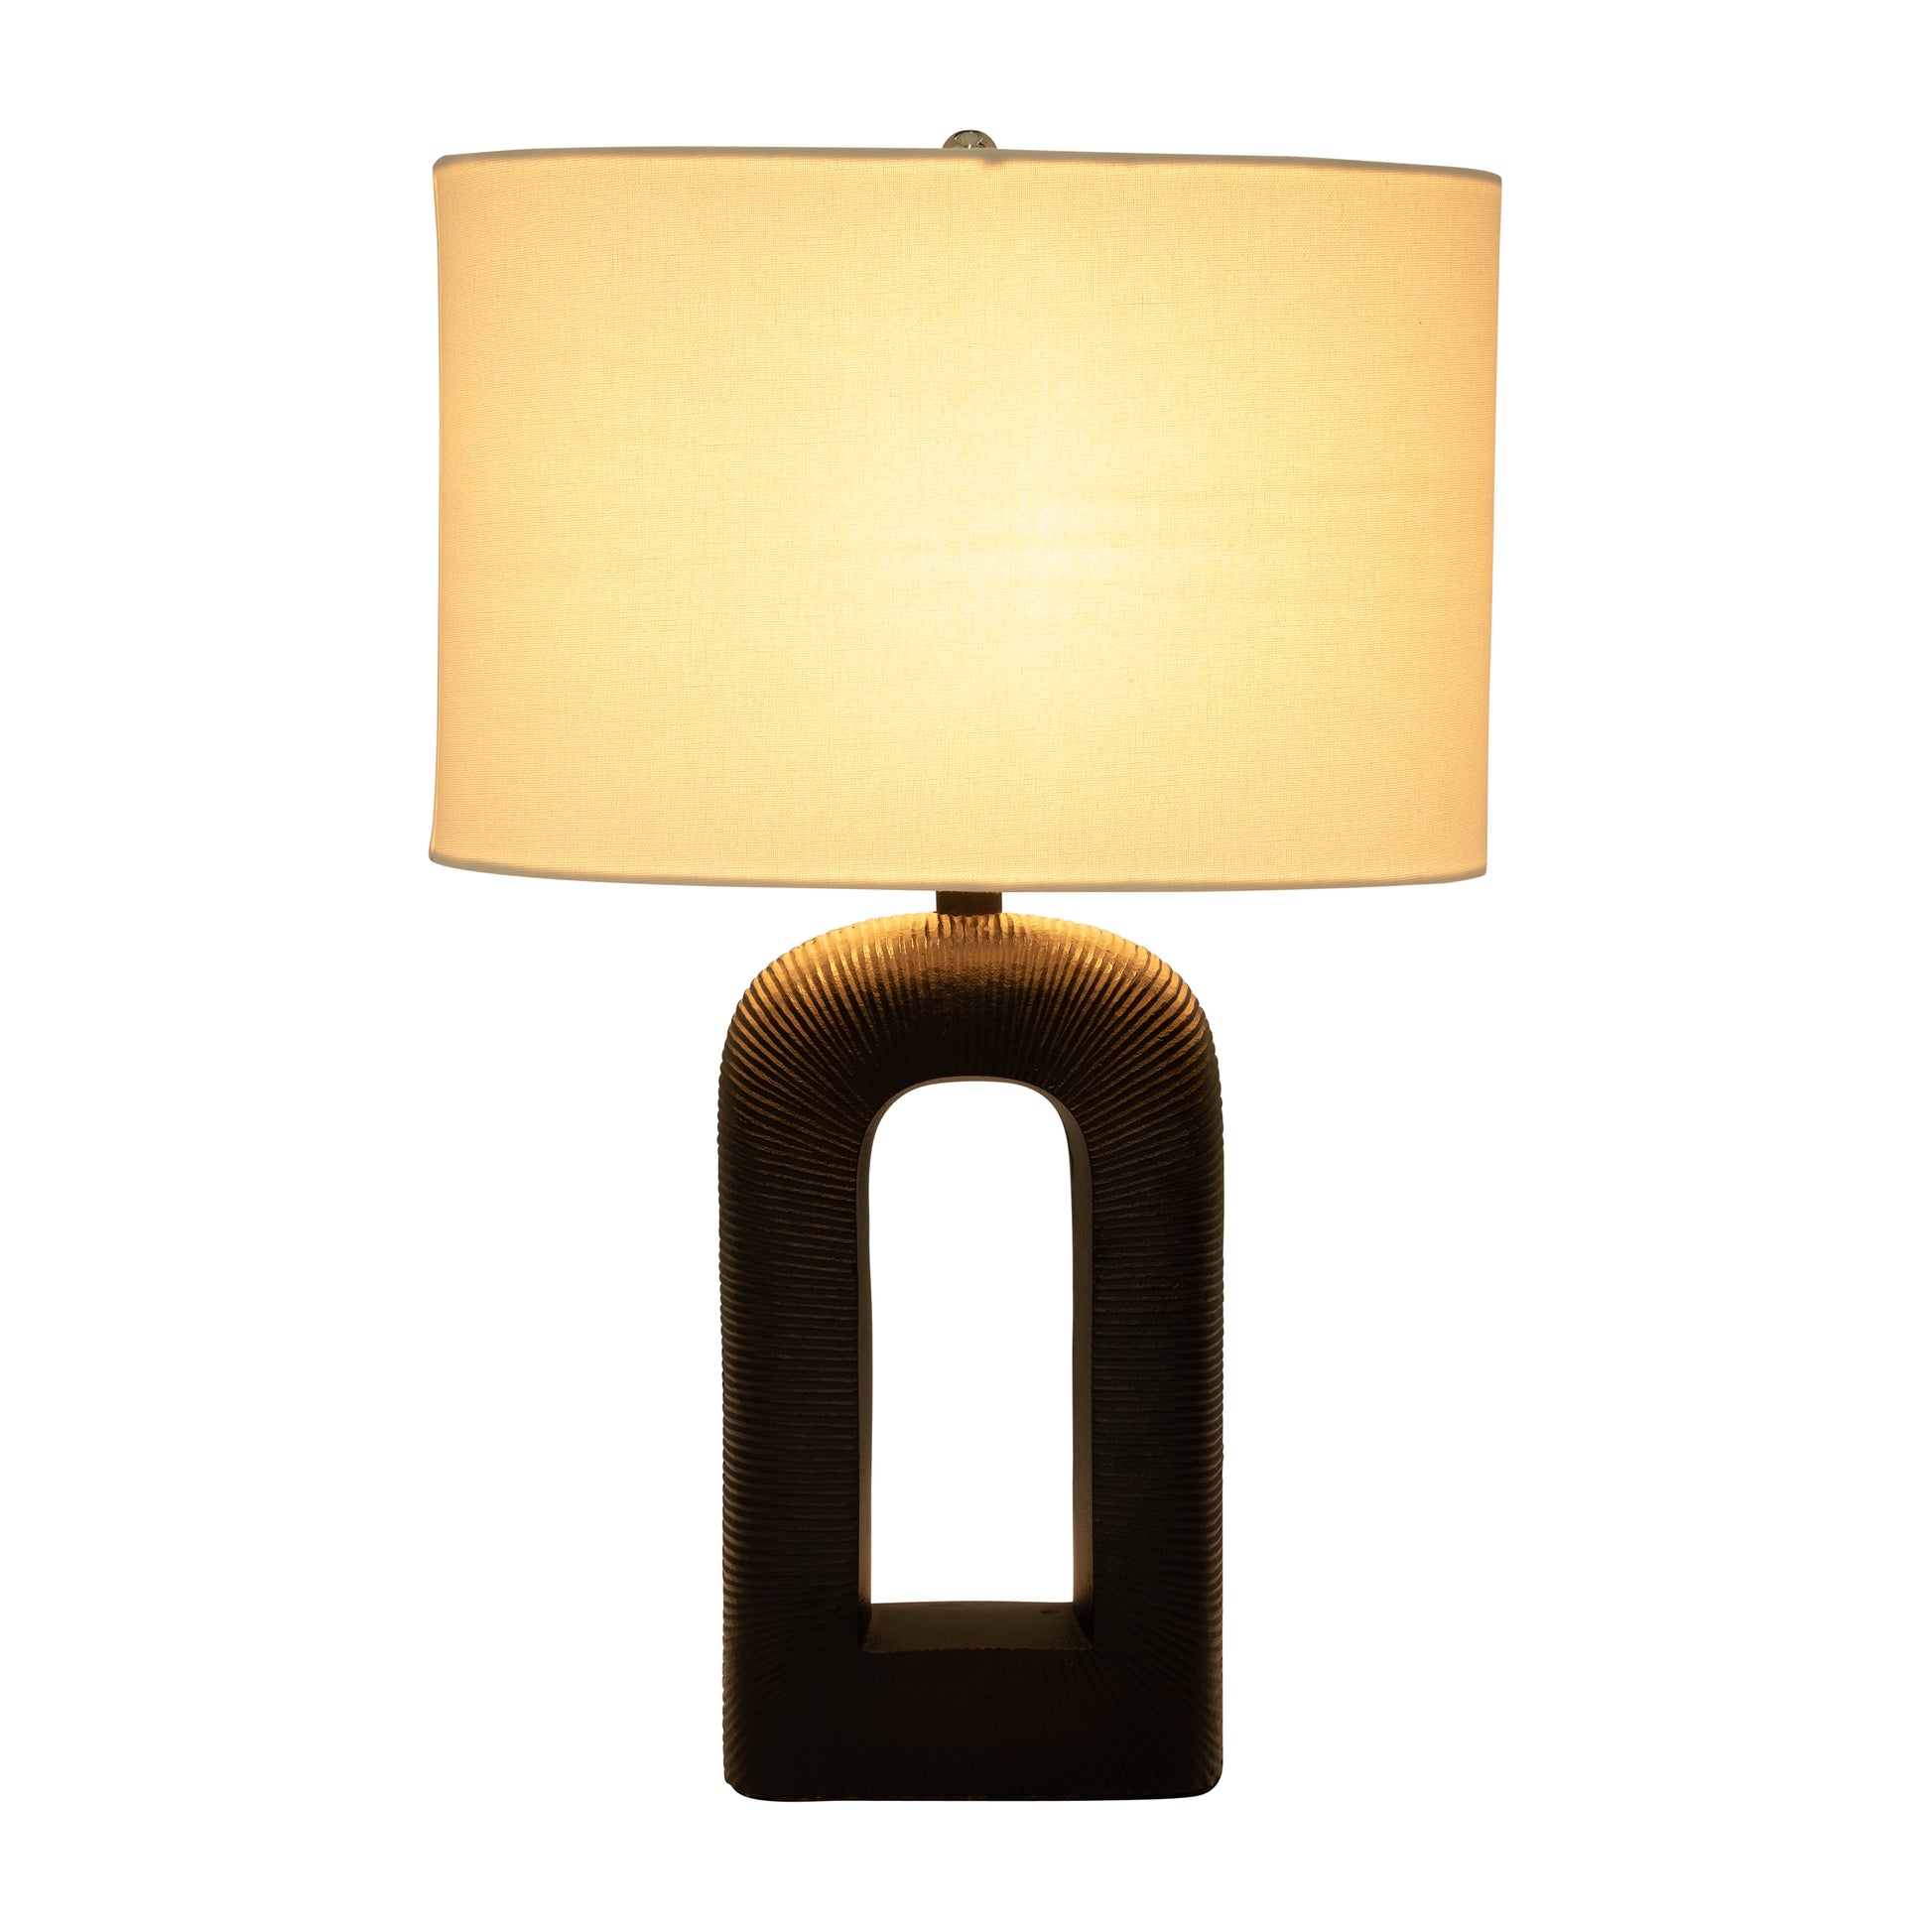 25" Cast Aluminium Table Lamp, Black - Elite Maison